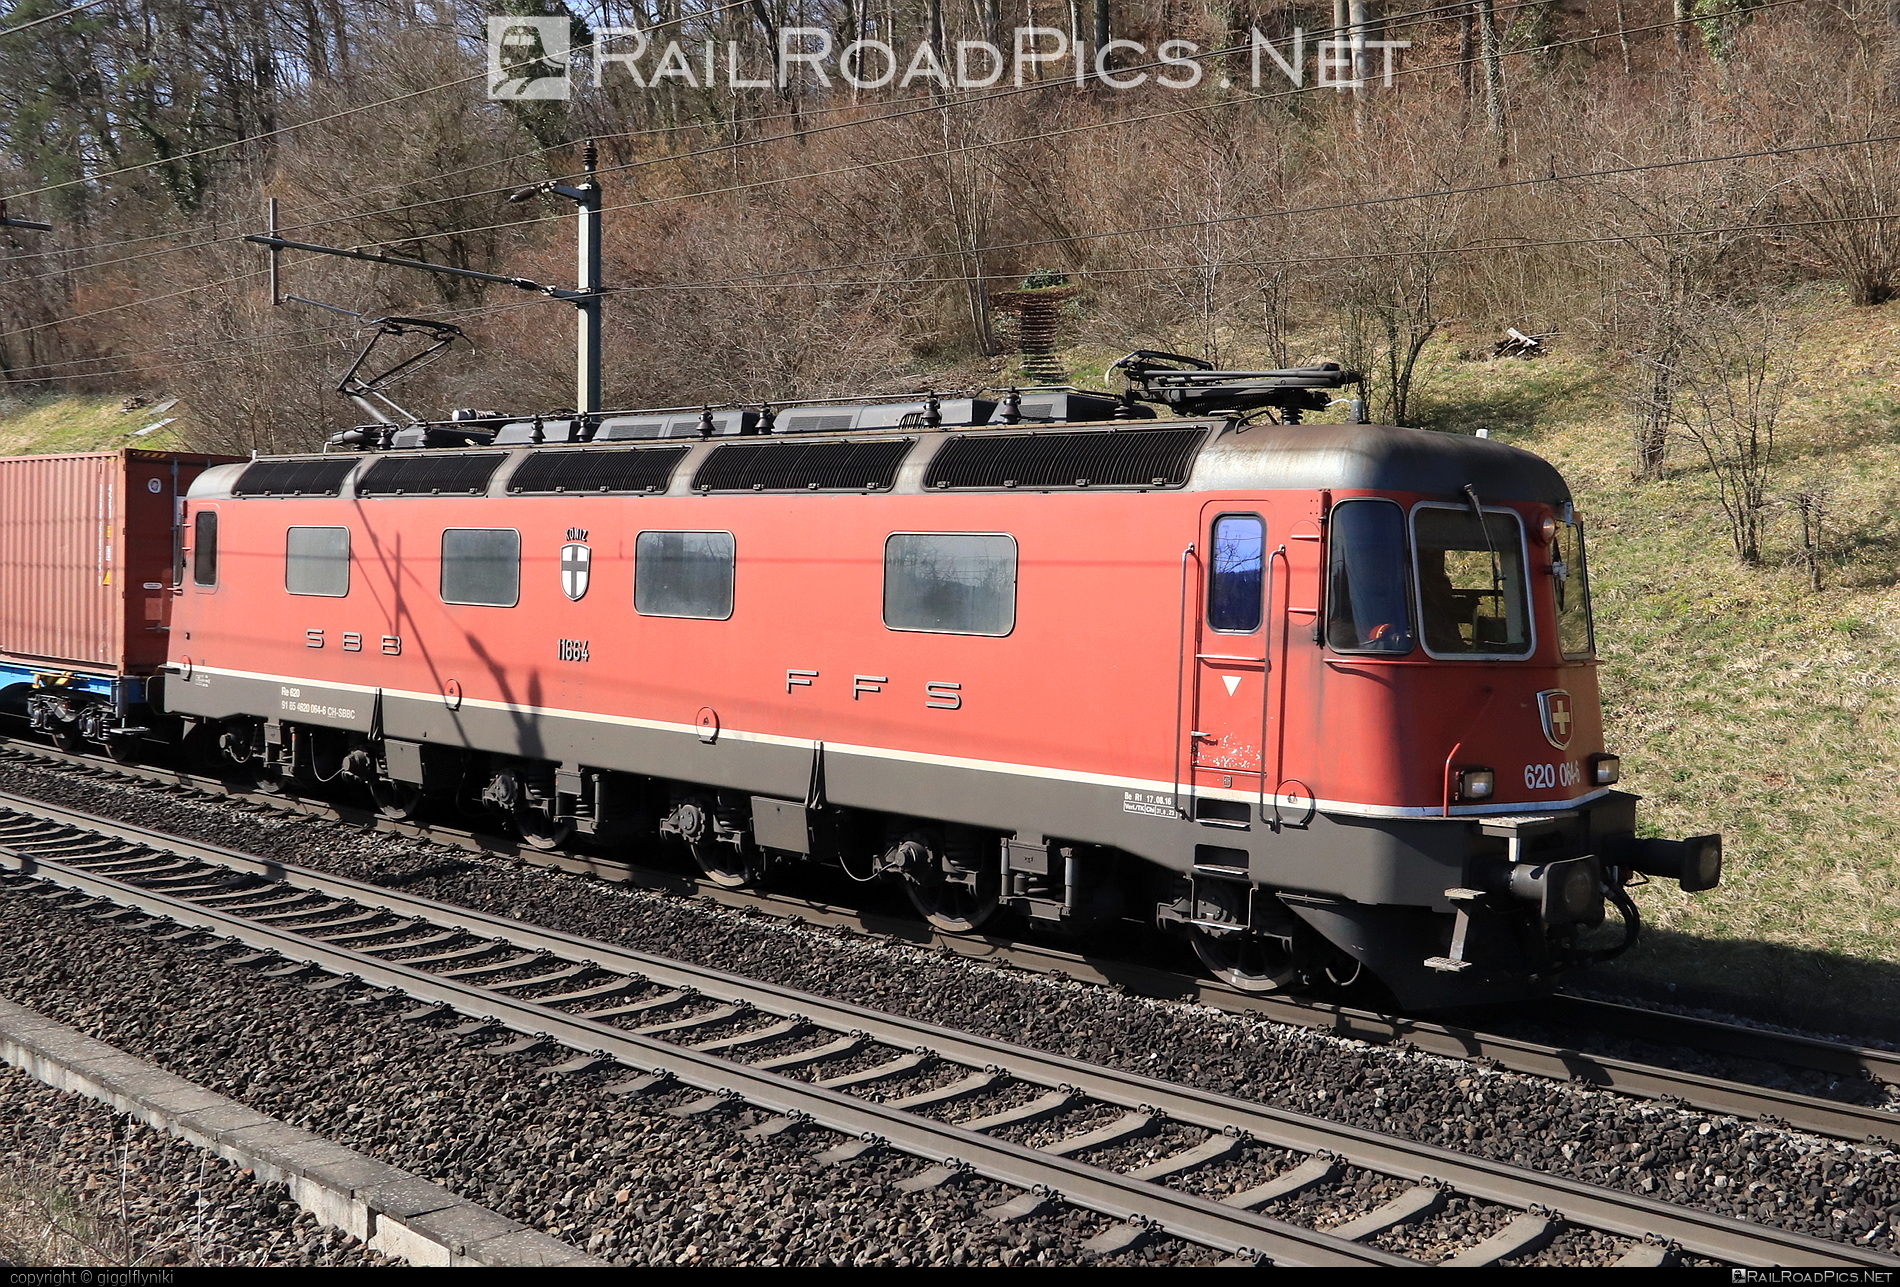 SBB Class Re 620 - 620 064-6 operated by Schweizerische Bundesbahnen SBB Cargo AG #SchweizerischeBundesbahnen #SchweizerischeBundesbahnenCargo #sbb #sbbClassRe620 #sbbRe620 #sbbc